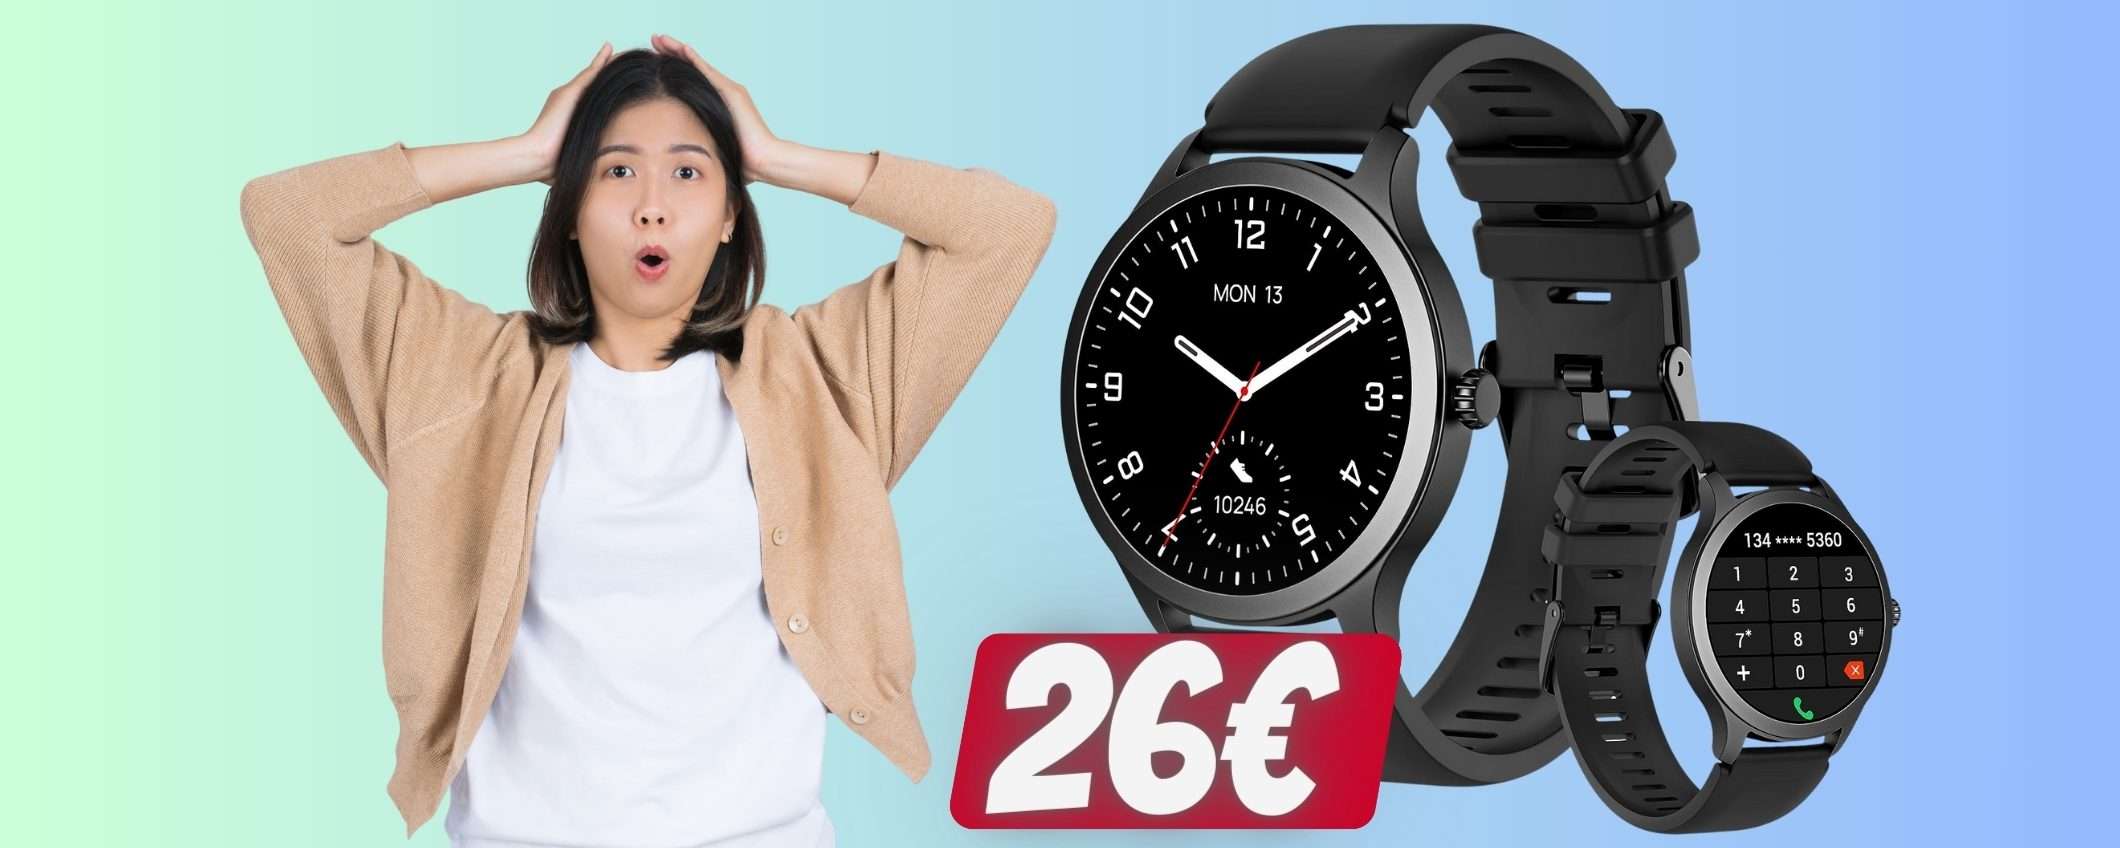 Smartwatch per fitness e con microfono per chiamate a soli 26€